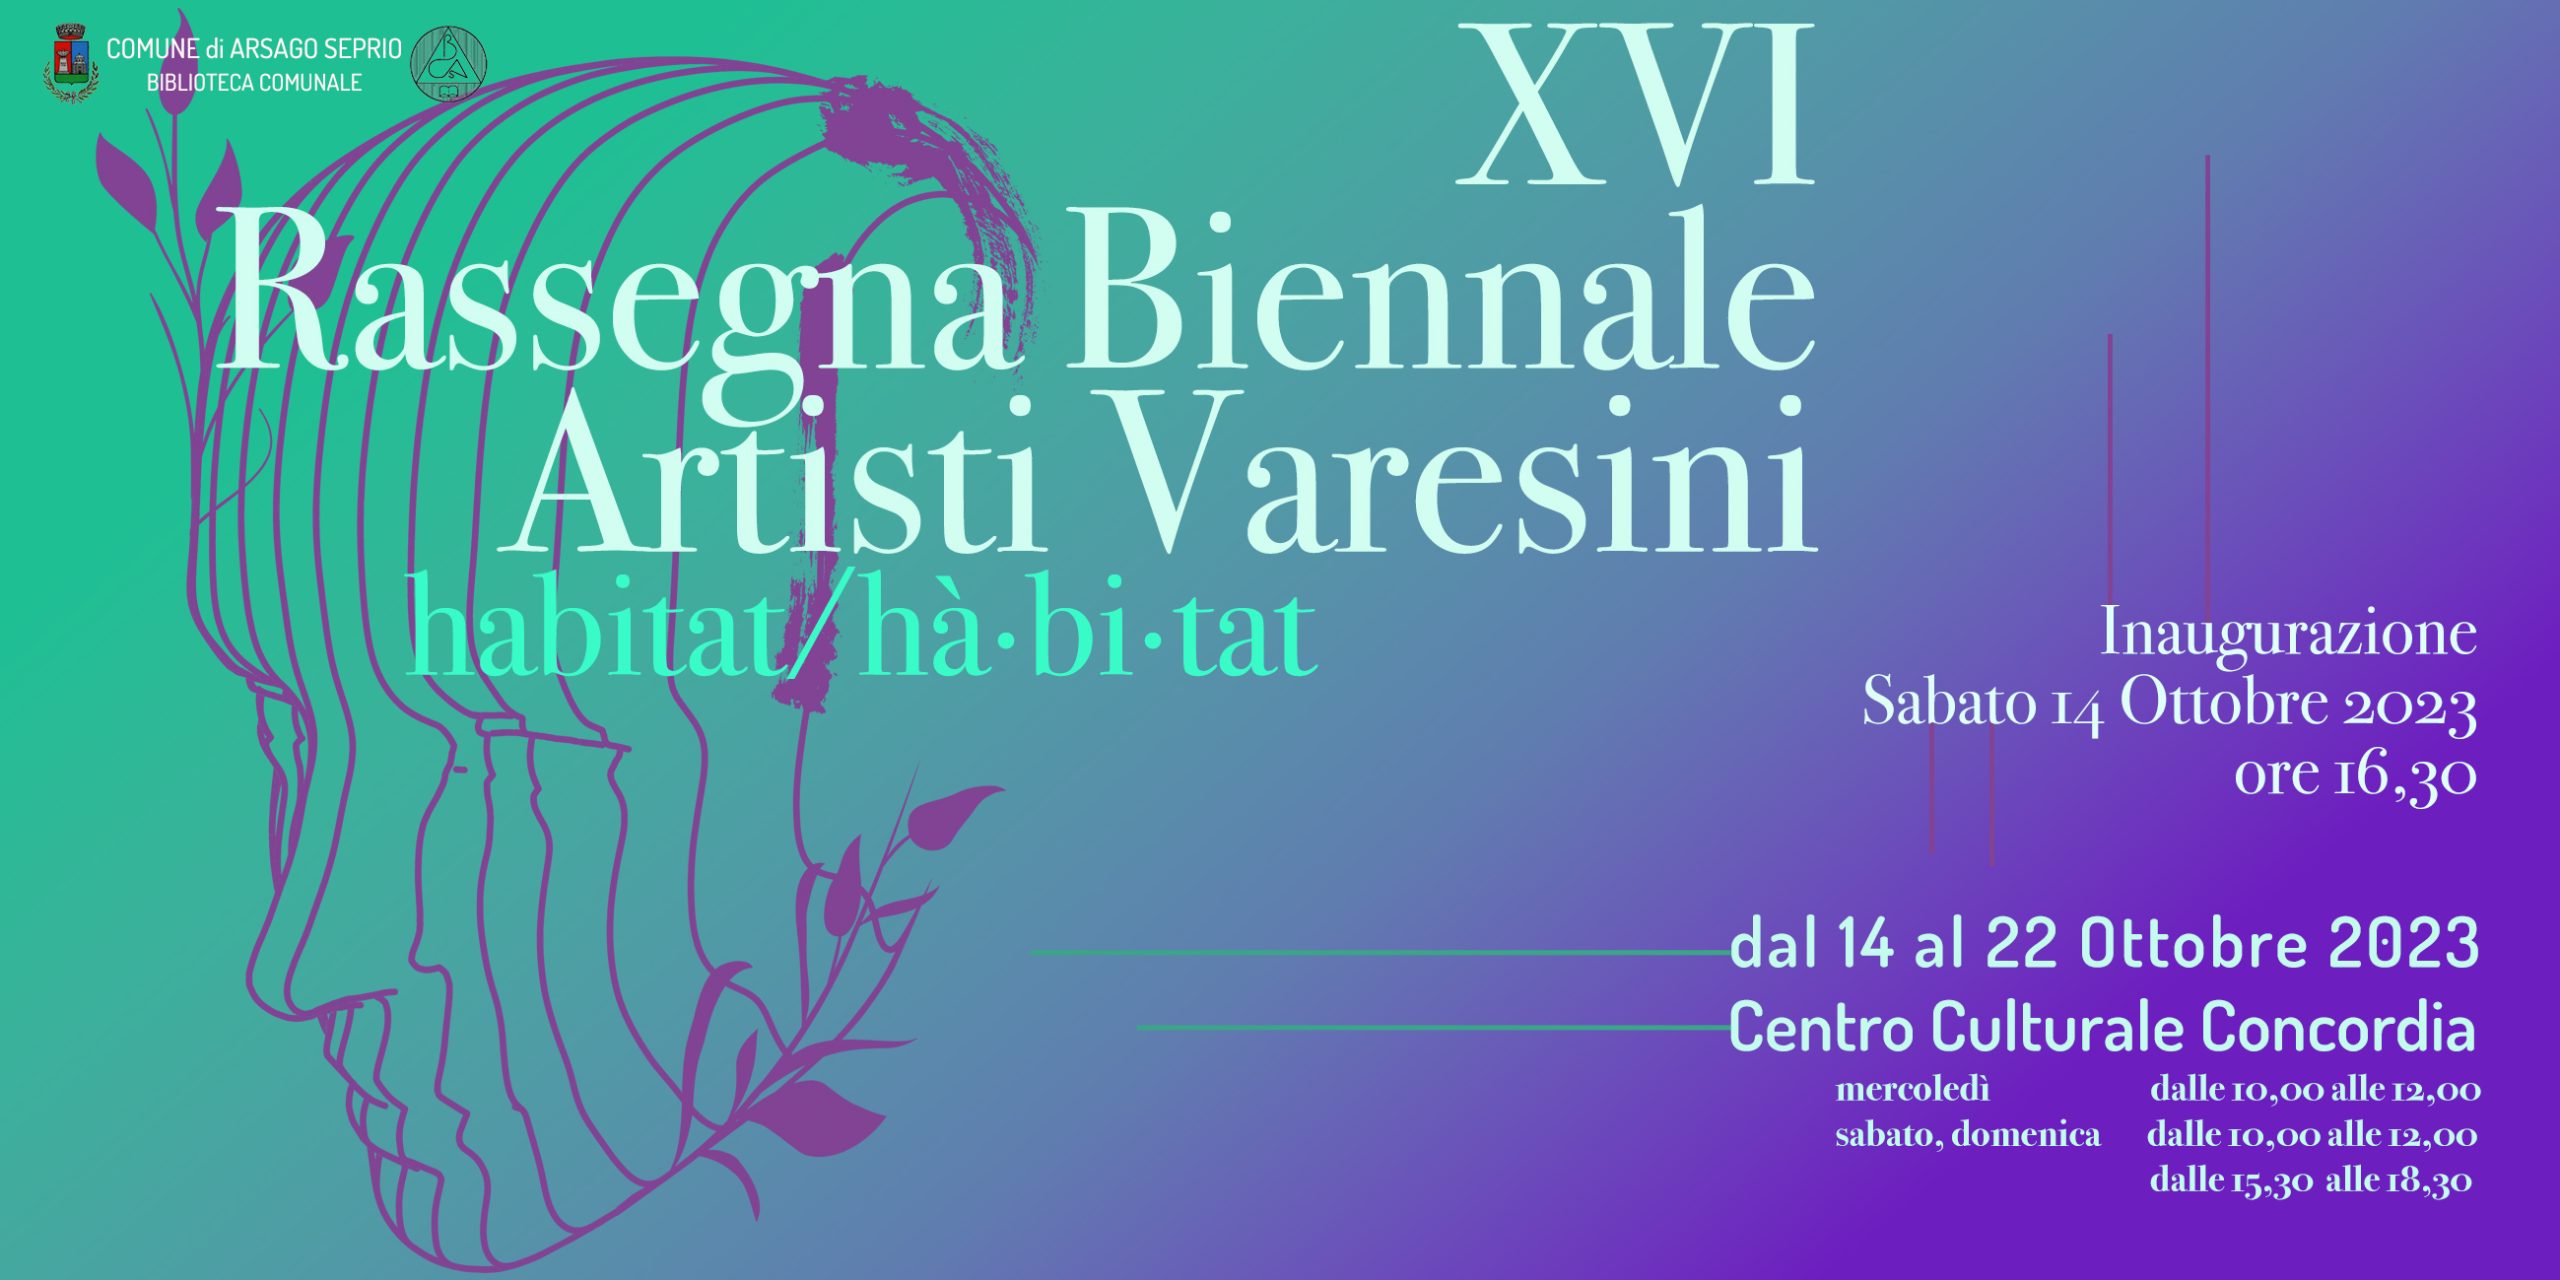 In arrivo la XVI edizione della Rassegna Biennale Artisti Varesini